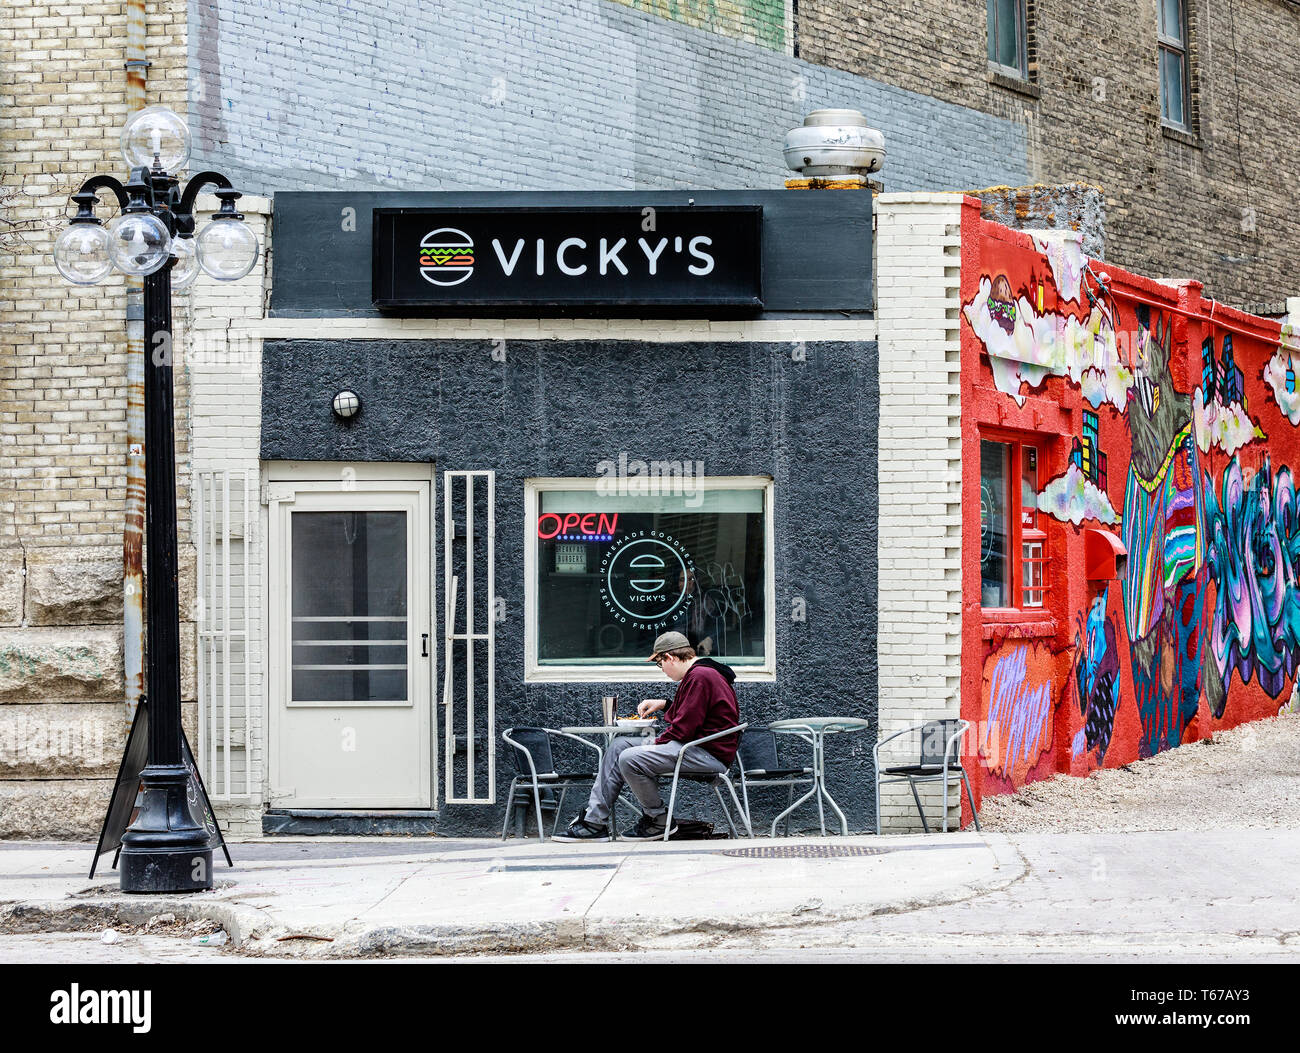 L'homme manger seul à un burger joint, l'Exchange District, Winnipeg, Manitoba, Canada. Banque D'Images